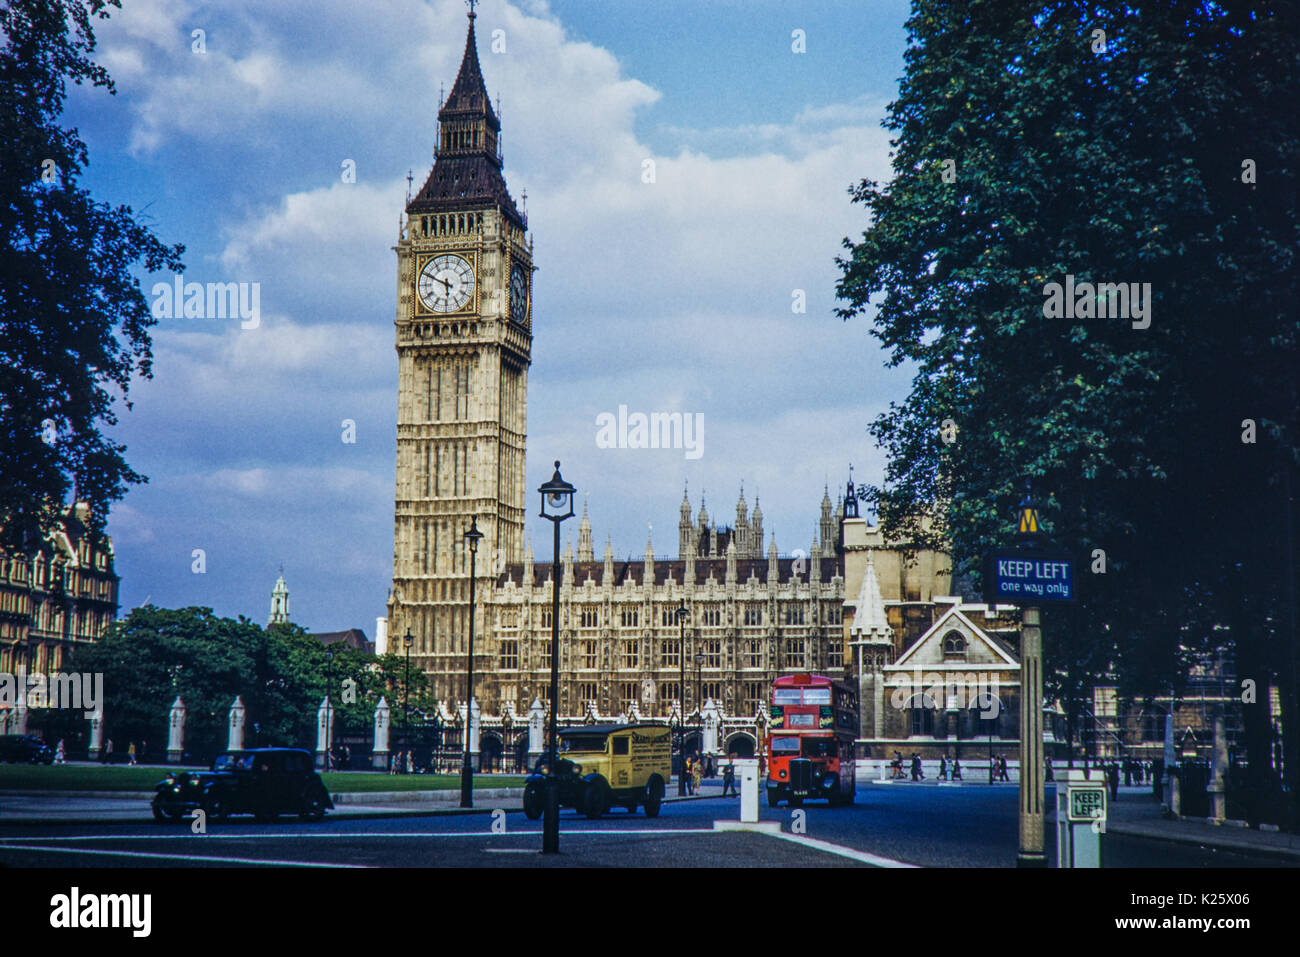 Primi anni cinquanta Case del Parlamento, St Stephens torre/Big Ben e vecchi veicoli, Westminster, London. Foto Stock